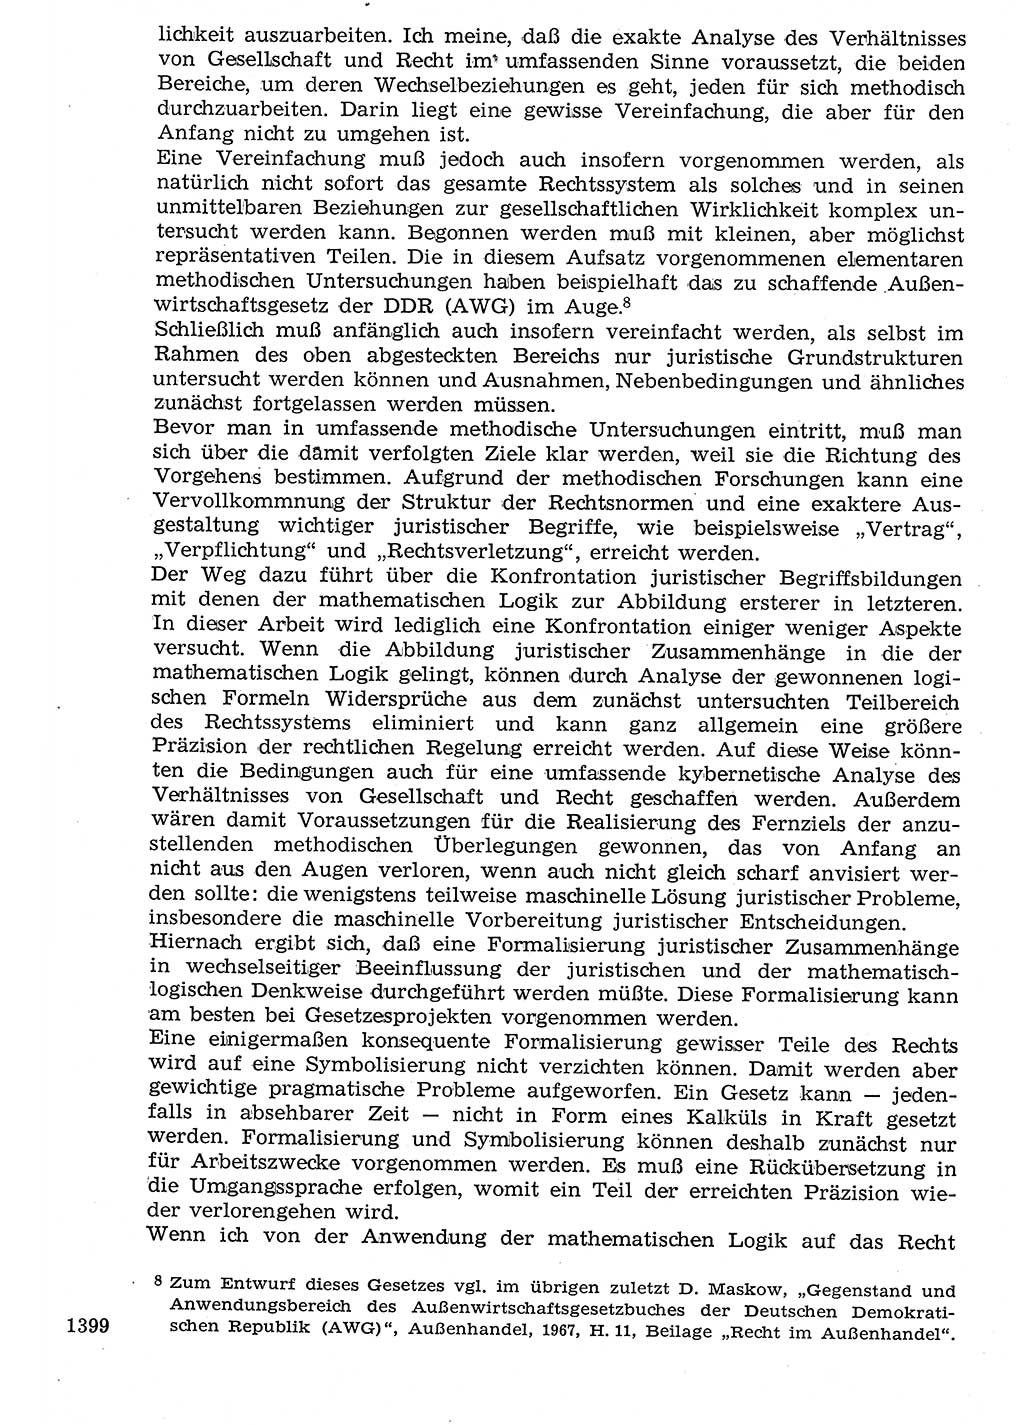 Staat und Recht (StuR), 17. Jahrgang [Deutsche Demokratische Republik (DDR)] 1968, Seite 1399 (StuR DDR 1968, S. 1399)